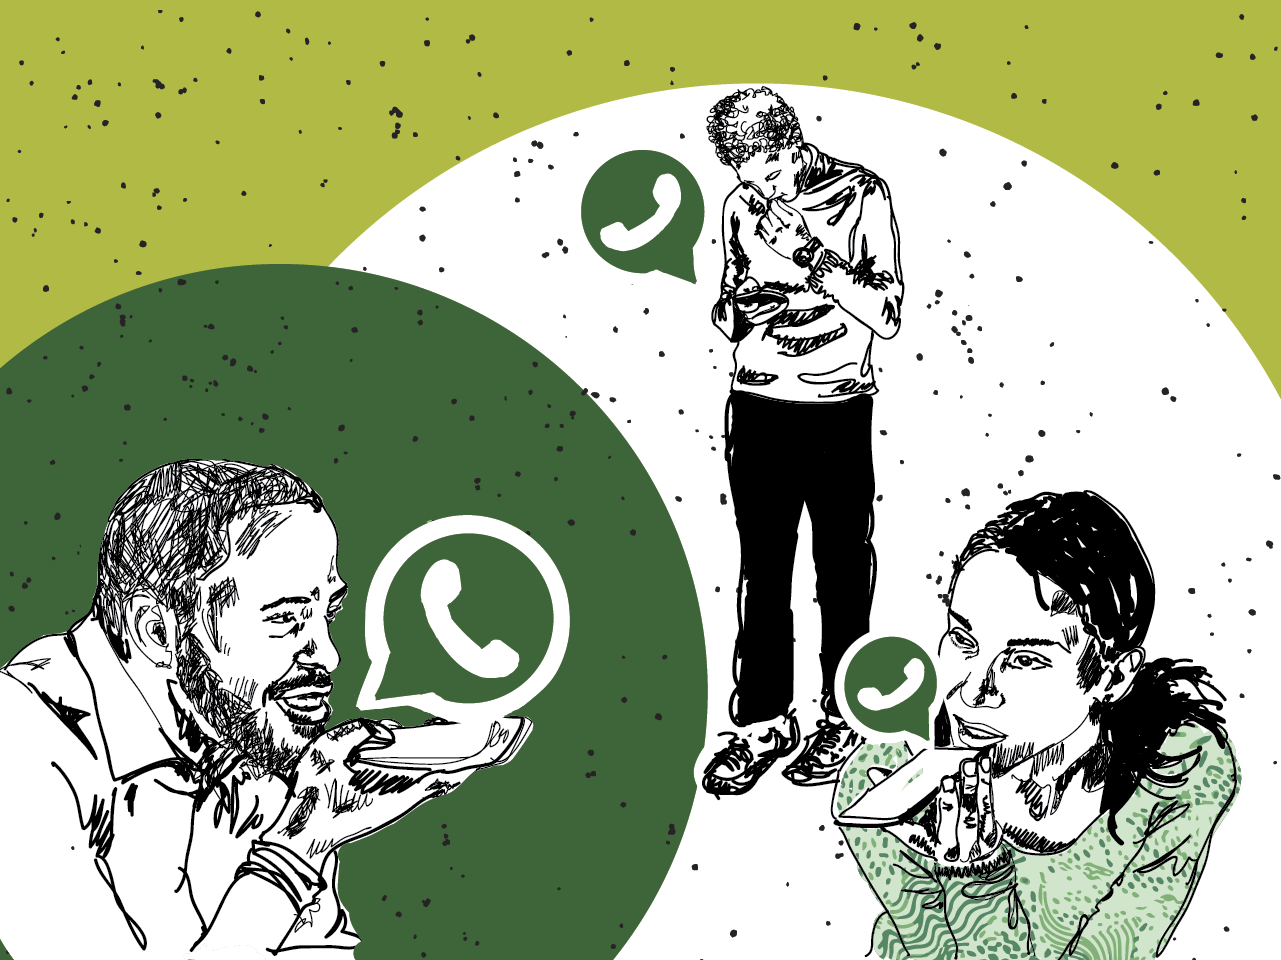 WhatsApp permite mensagens temporárias por padrão — em todas as conversas